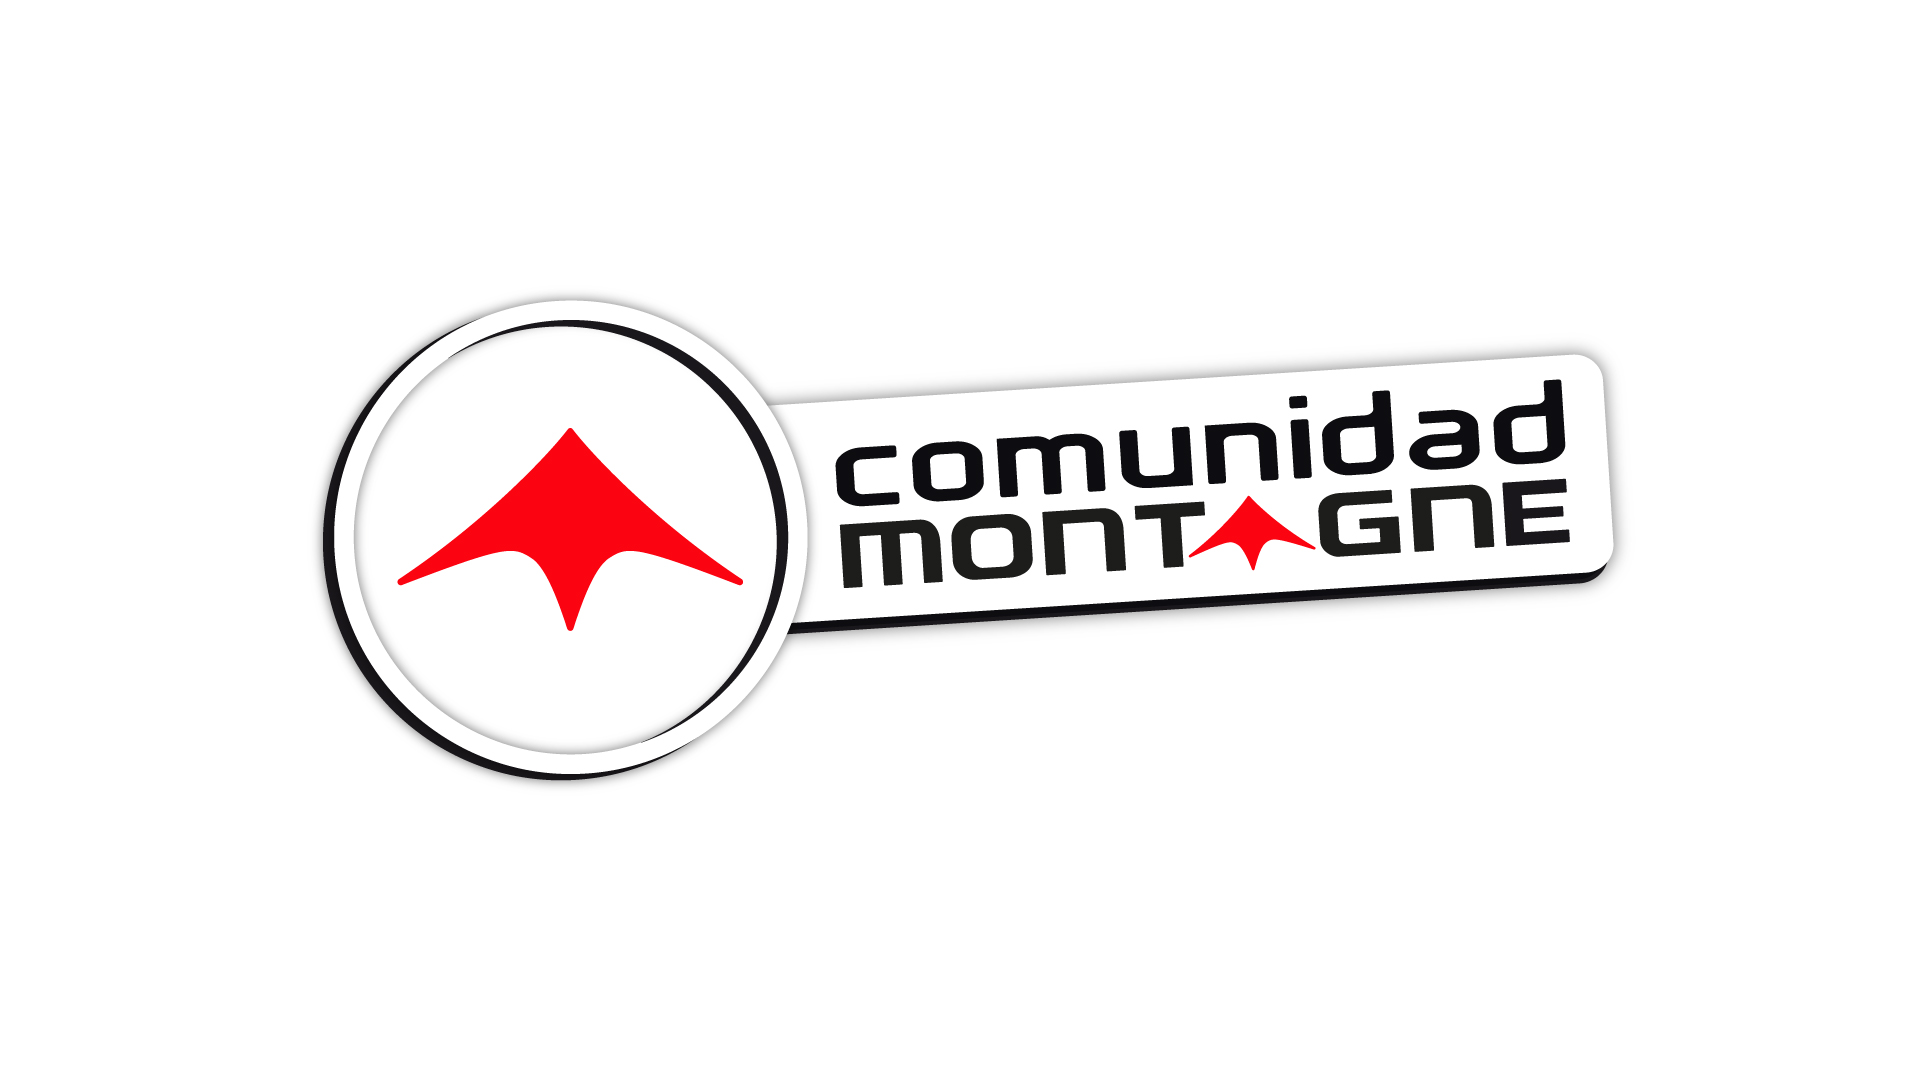 Logotipo Promo Comunidad Montagne (Web)